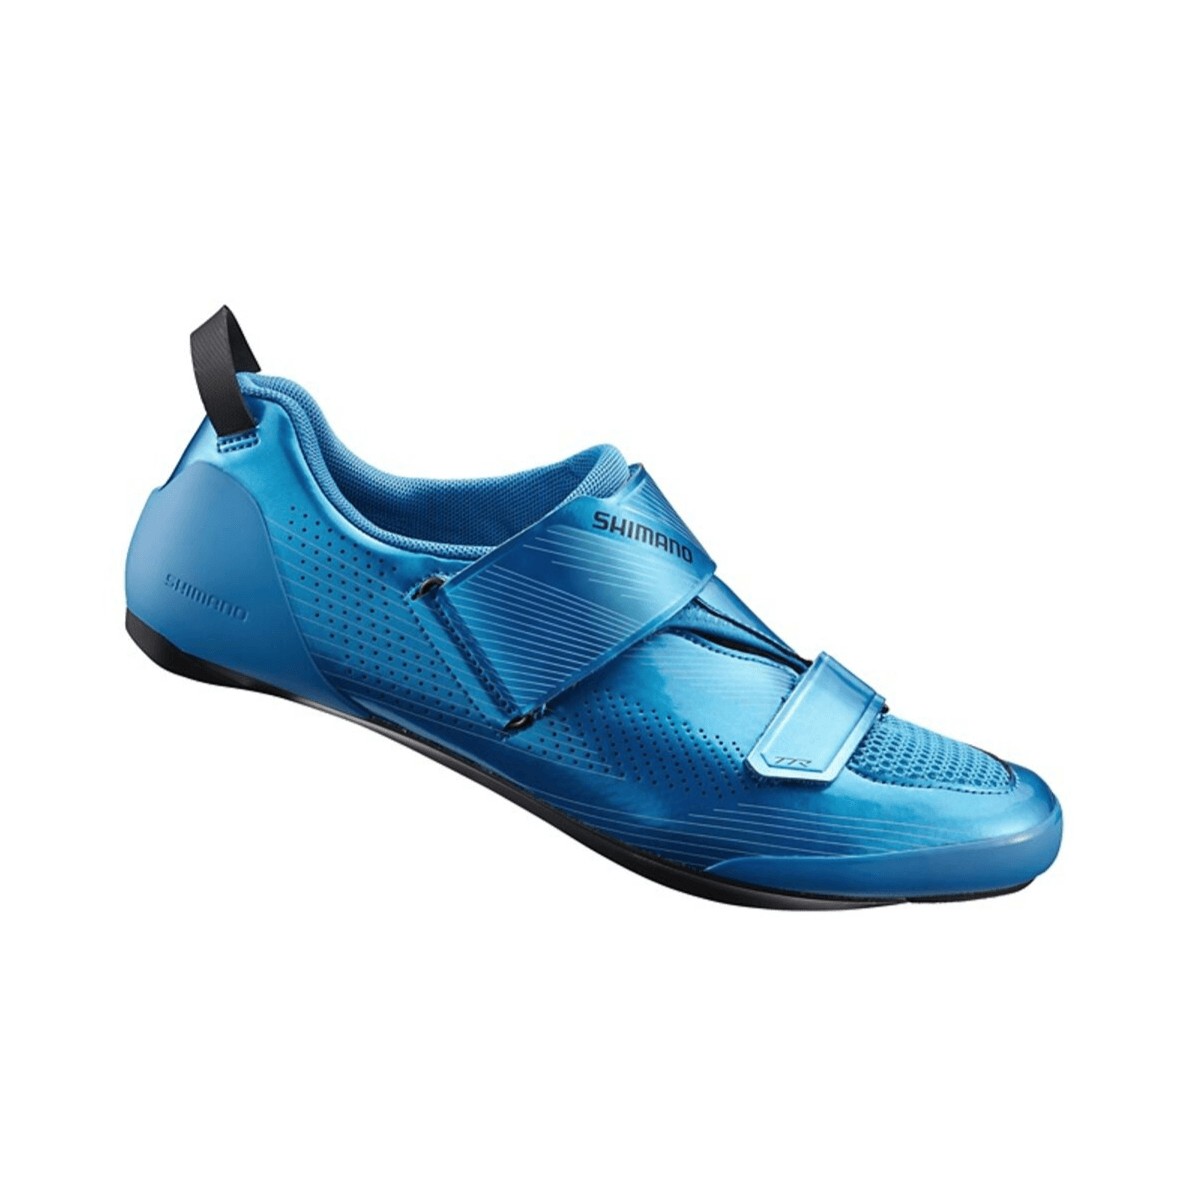 Shimano TR9 Triathlonschuhe blau, Größe 43,5 - EUR